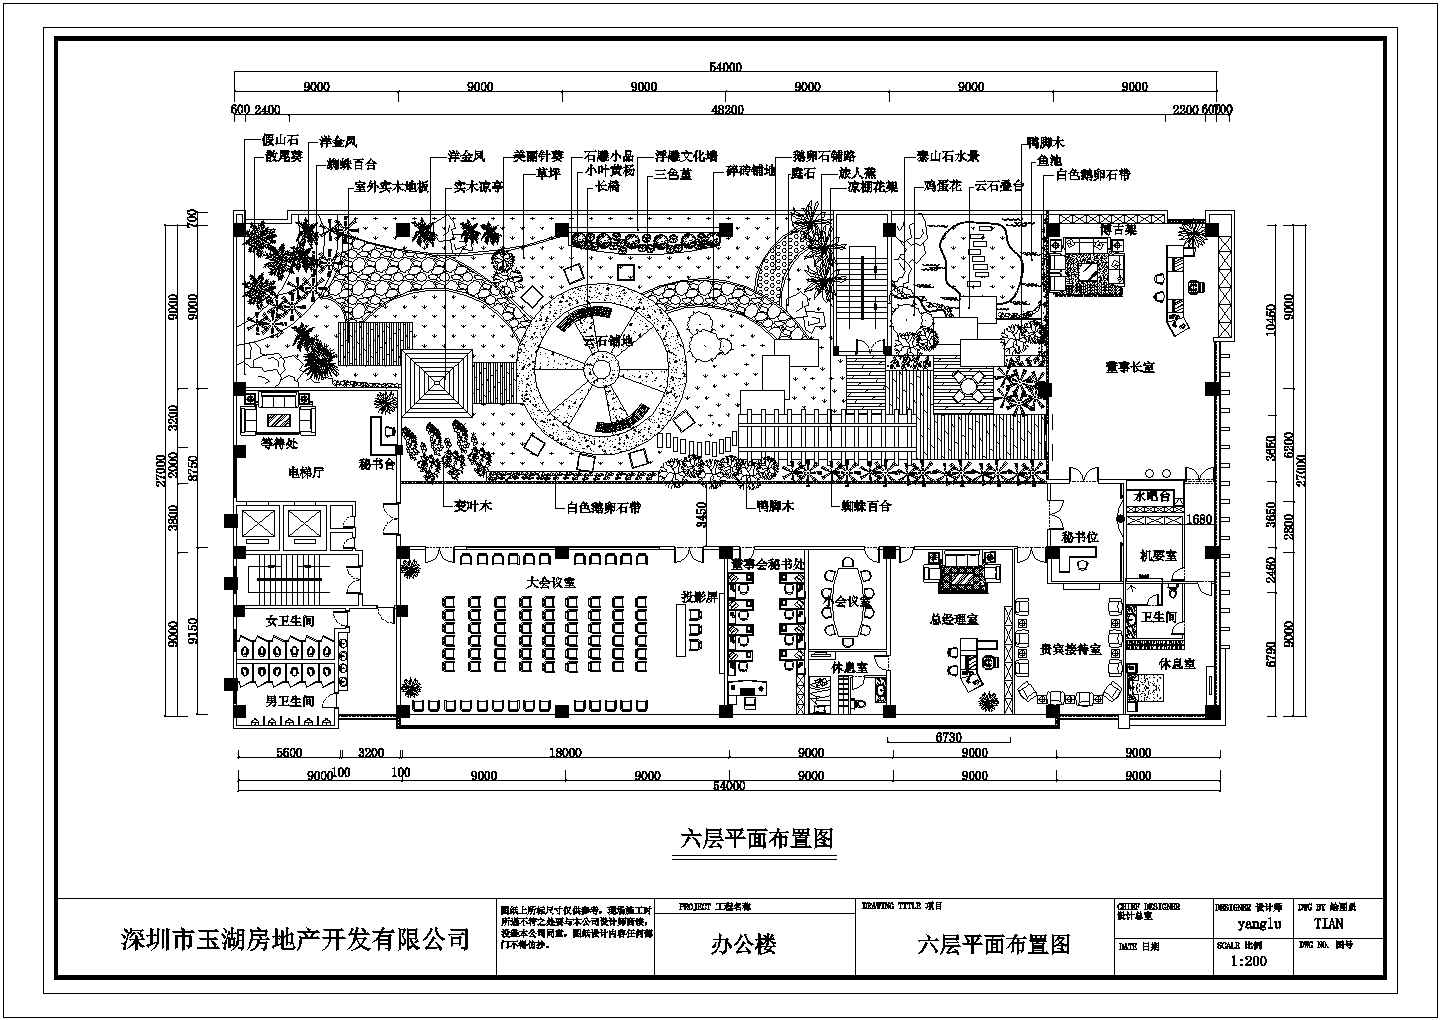 宁波房地产公司屋顶花园详细建筑施工图